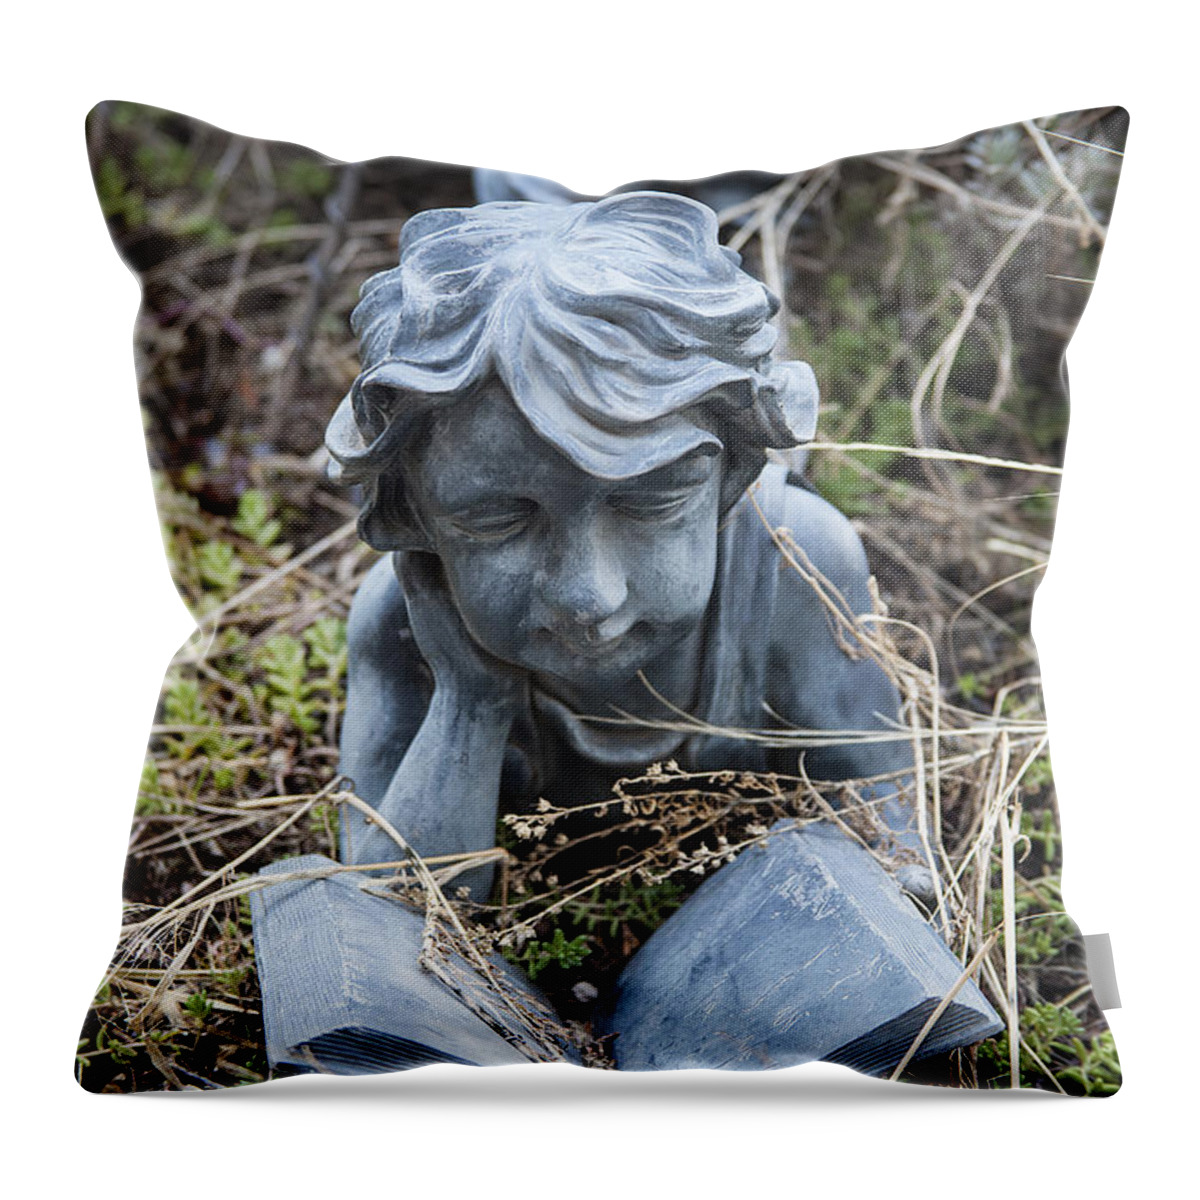 Garden Statue Photographs Throw Pillow featuring the photograph Boy Reading In Garden Statue by Jerry Cowart